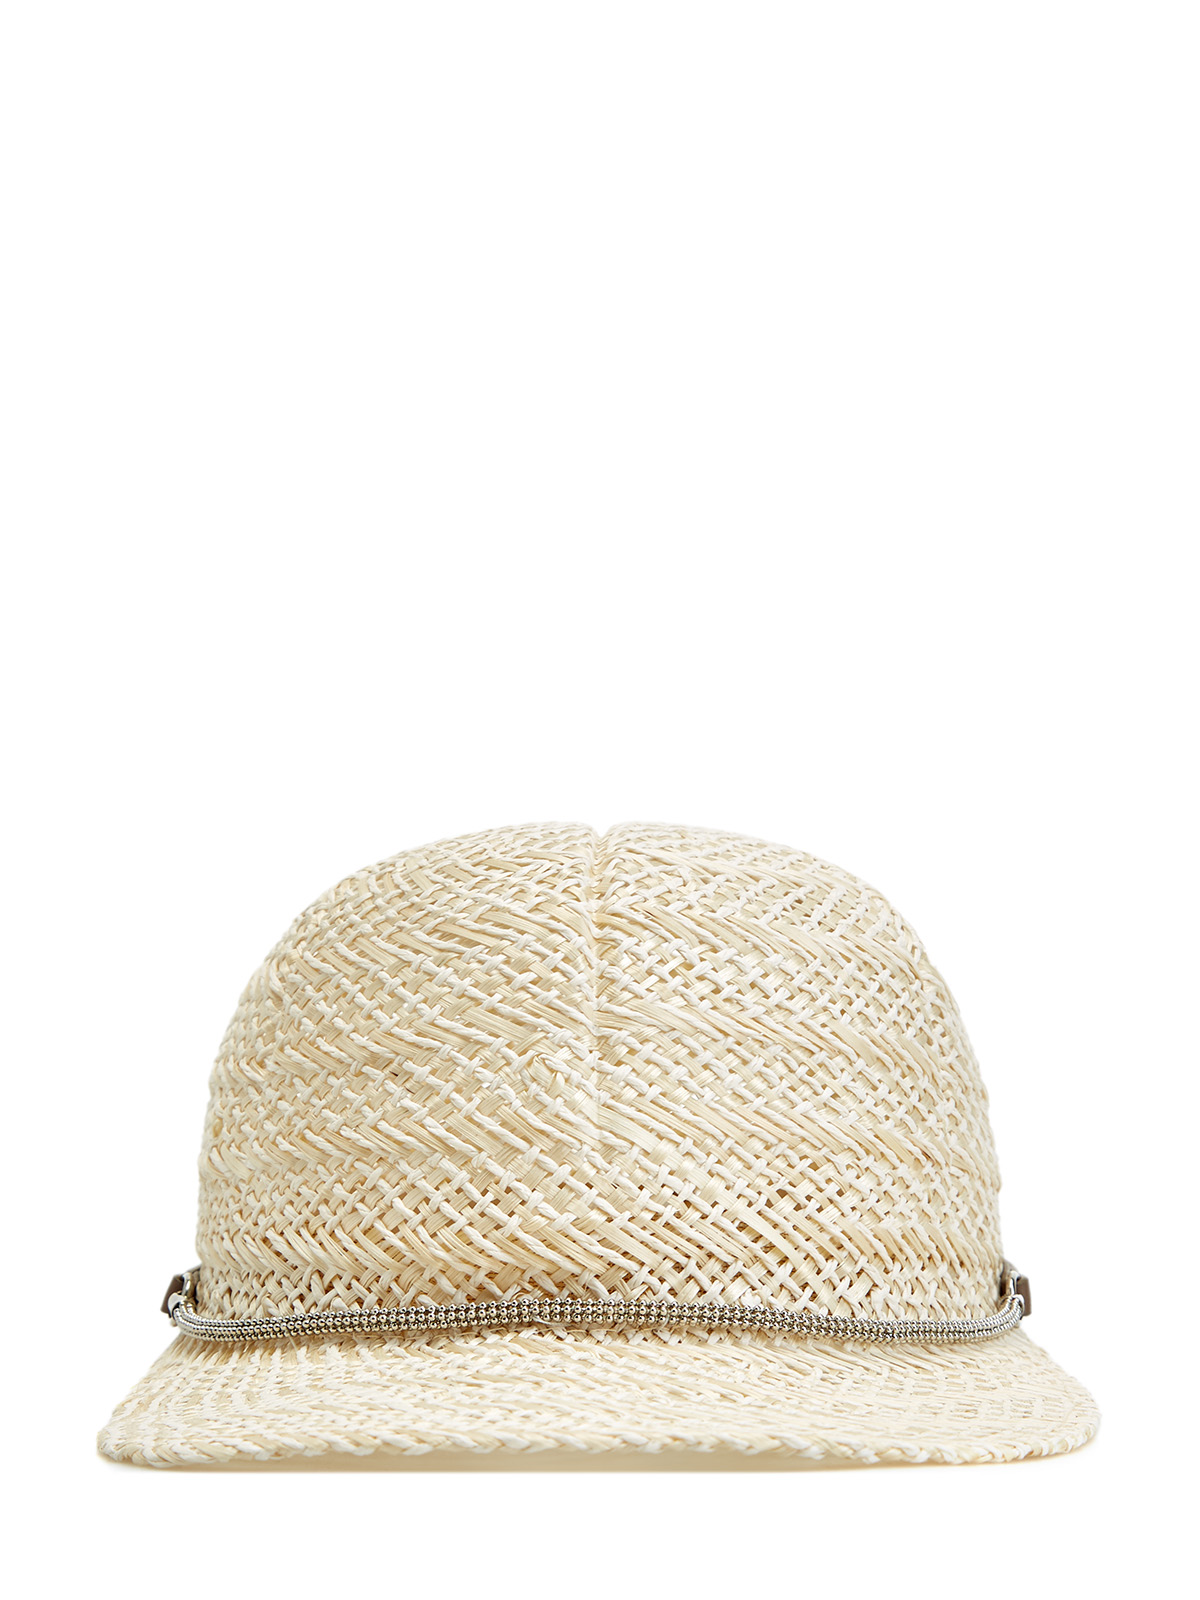 Плетеная кепка с кожаным ремешком и цепочками PESERICO, цвет бежевый, размер M;L